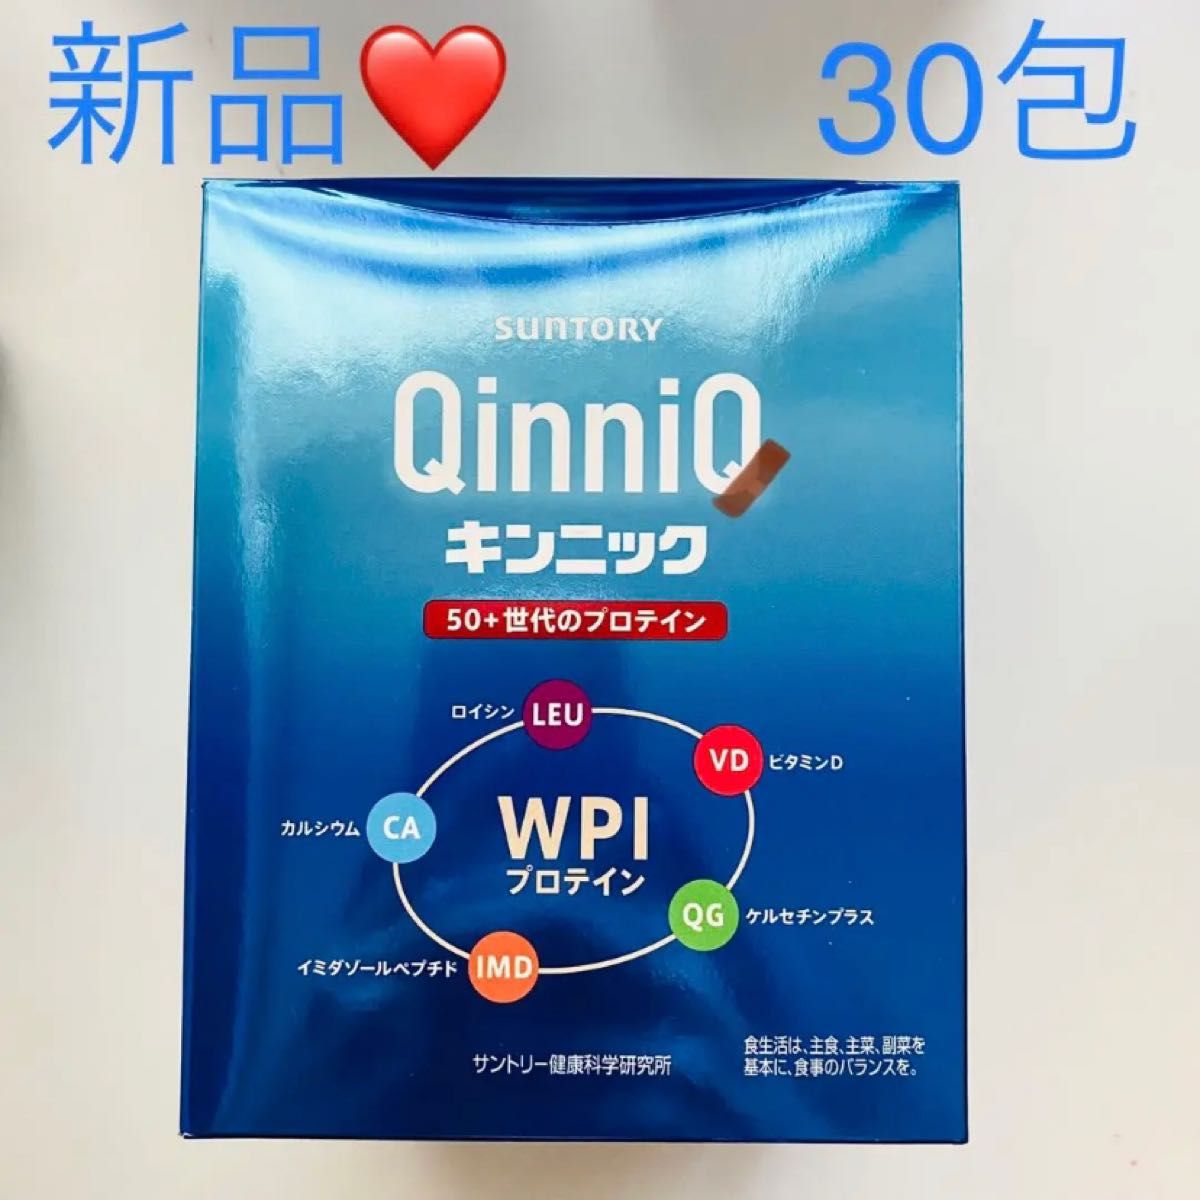 ◇限定Special Price サントリー QinniQ 50+世代のプロテイン 30包